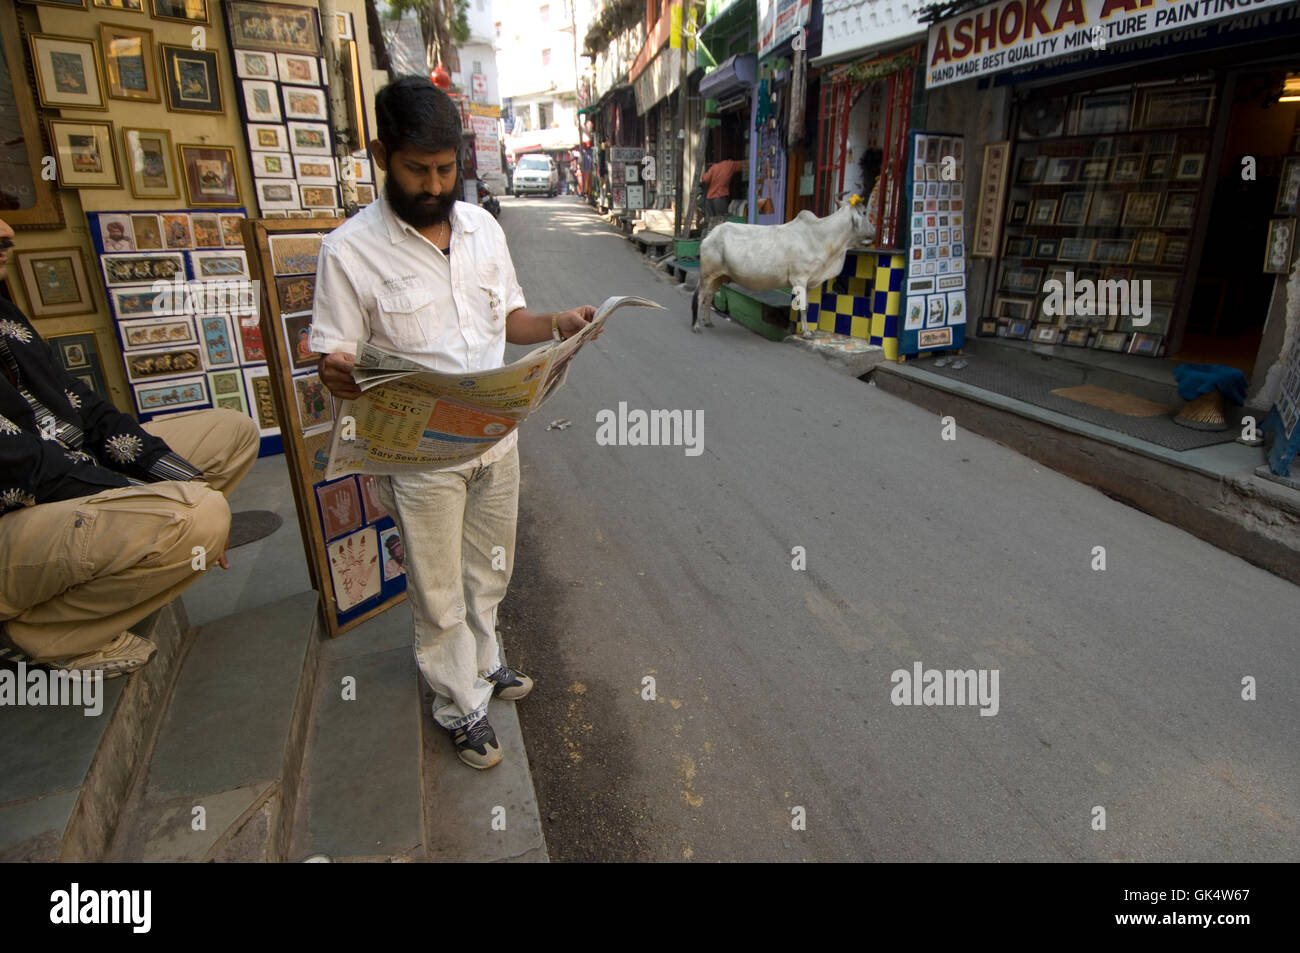 2009, Udaipur, Inde --- un homme lit un journal dans une rue d'Udaipur tandis qu'une vache sacrée erre en arrière-plan. Udaipur Banque D'Images